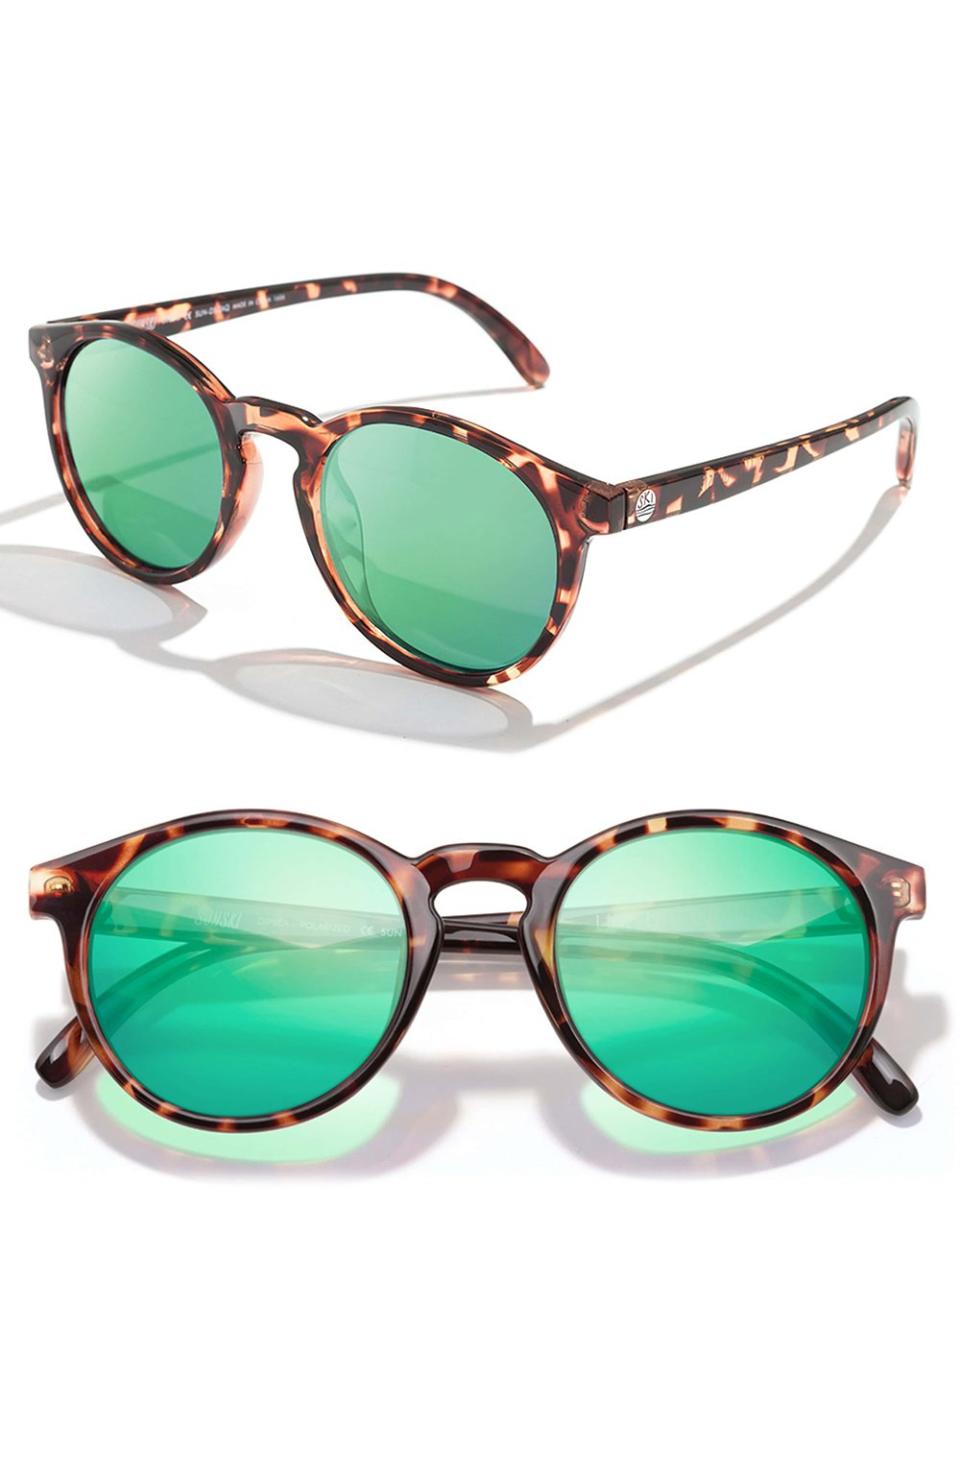 Best Gift for Beach Goers: Sunski Dipsea Polarized Sunglasses